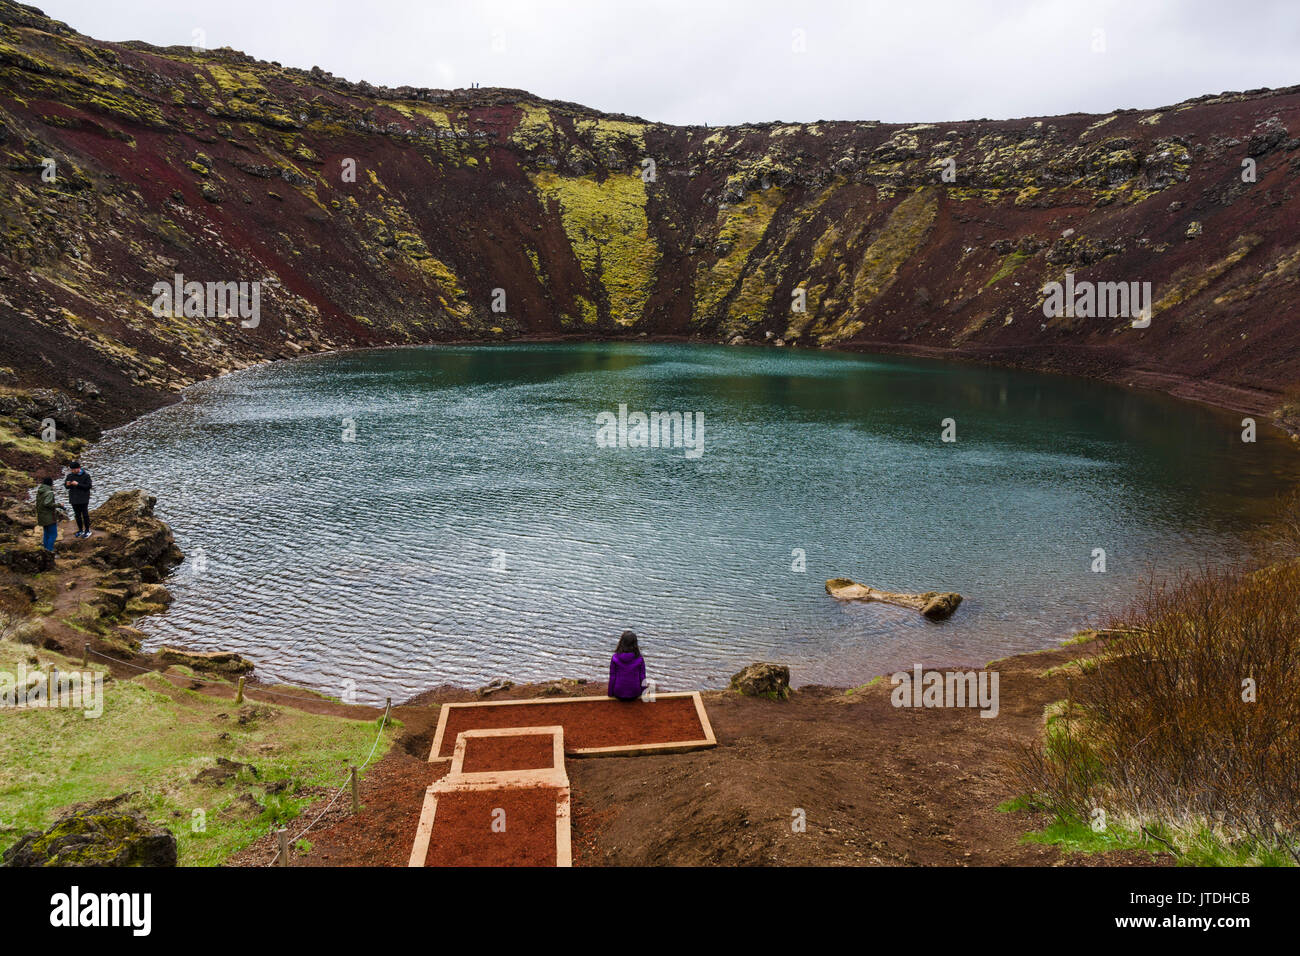 Kerið è un cratere vulcanico lago situato in Grímsnes area nel sud dell'Islanda, sul popolare percorso turistico noto come il Golden Circle. Foto Stock